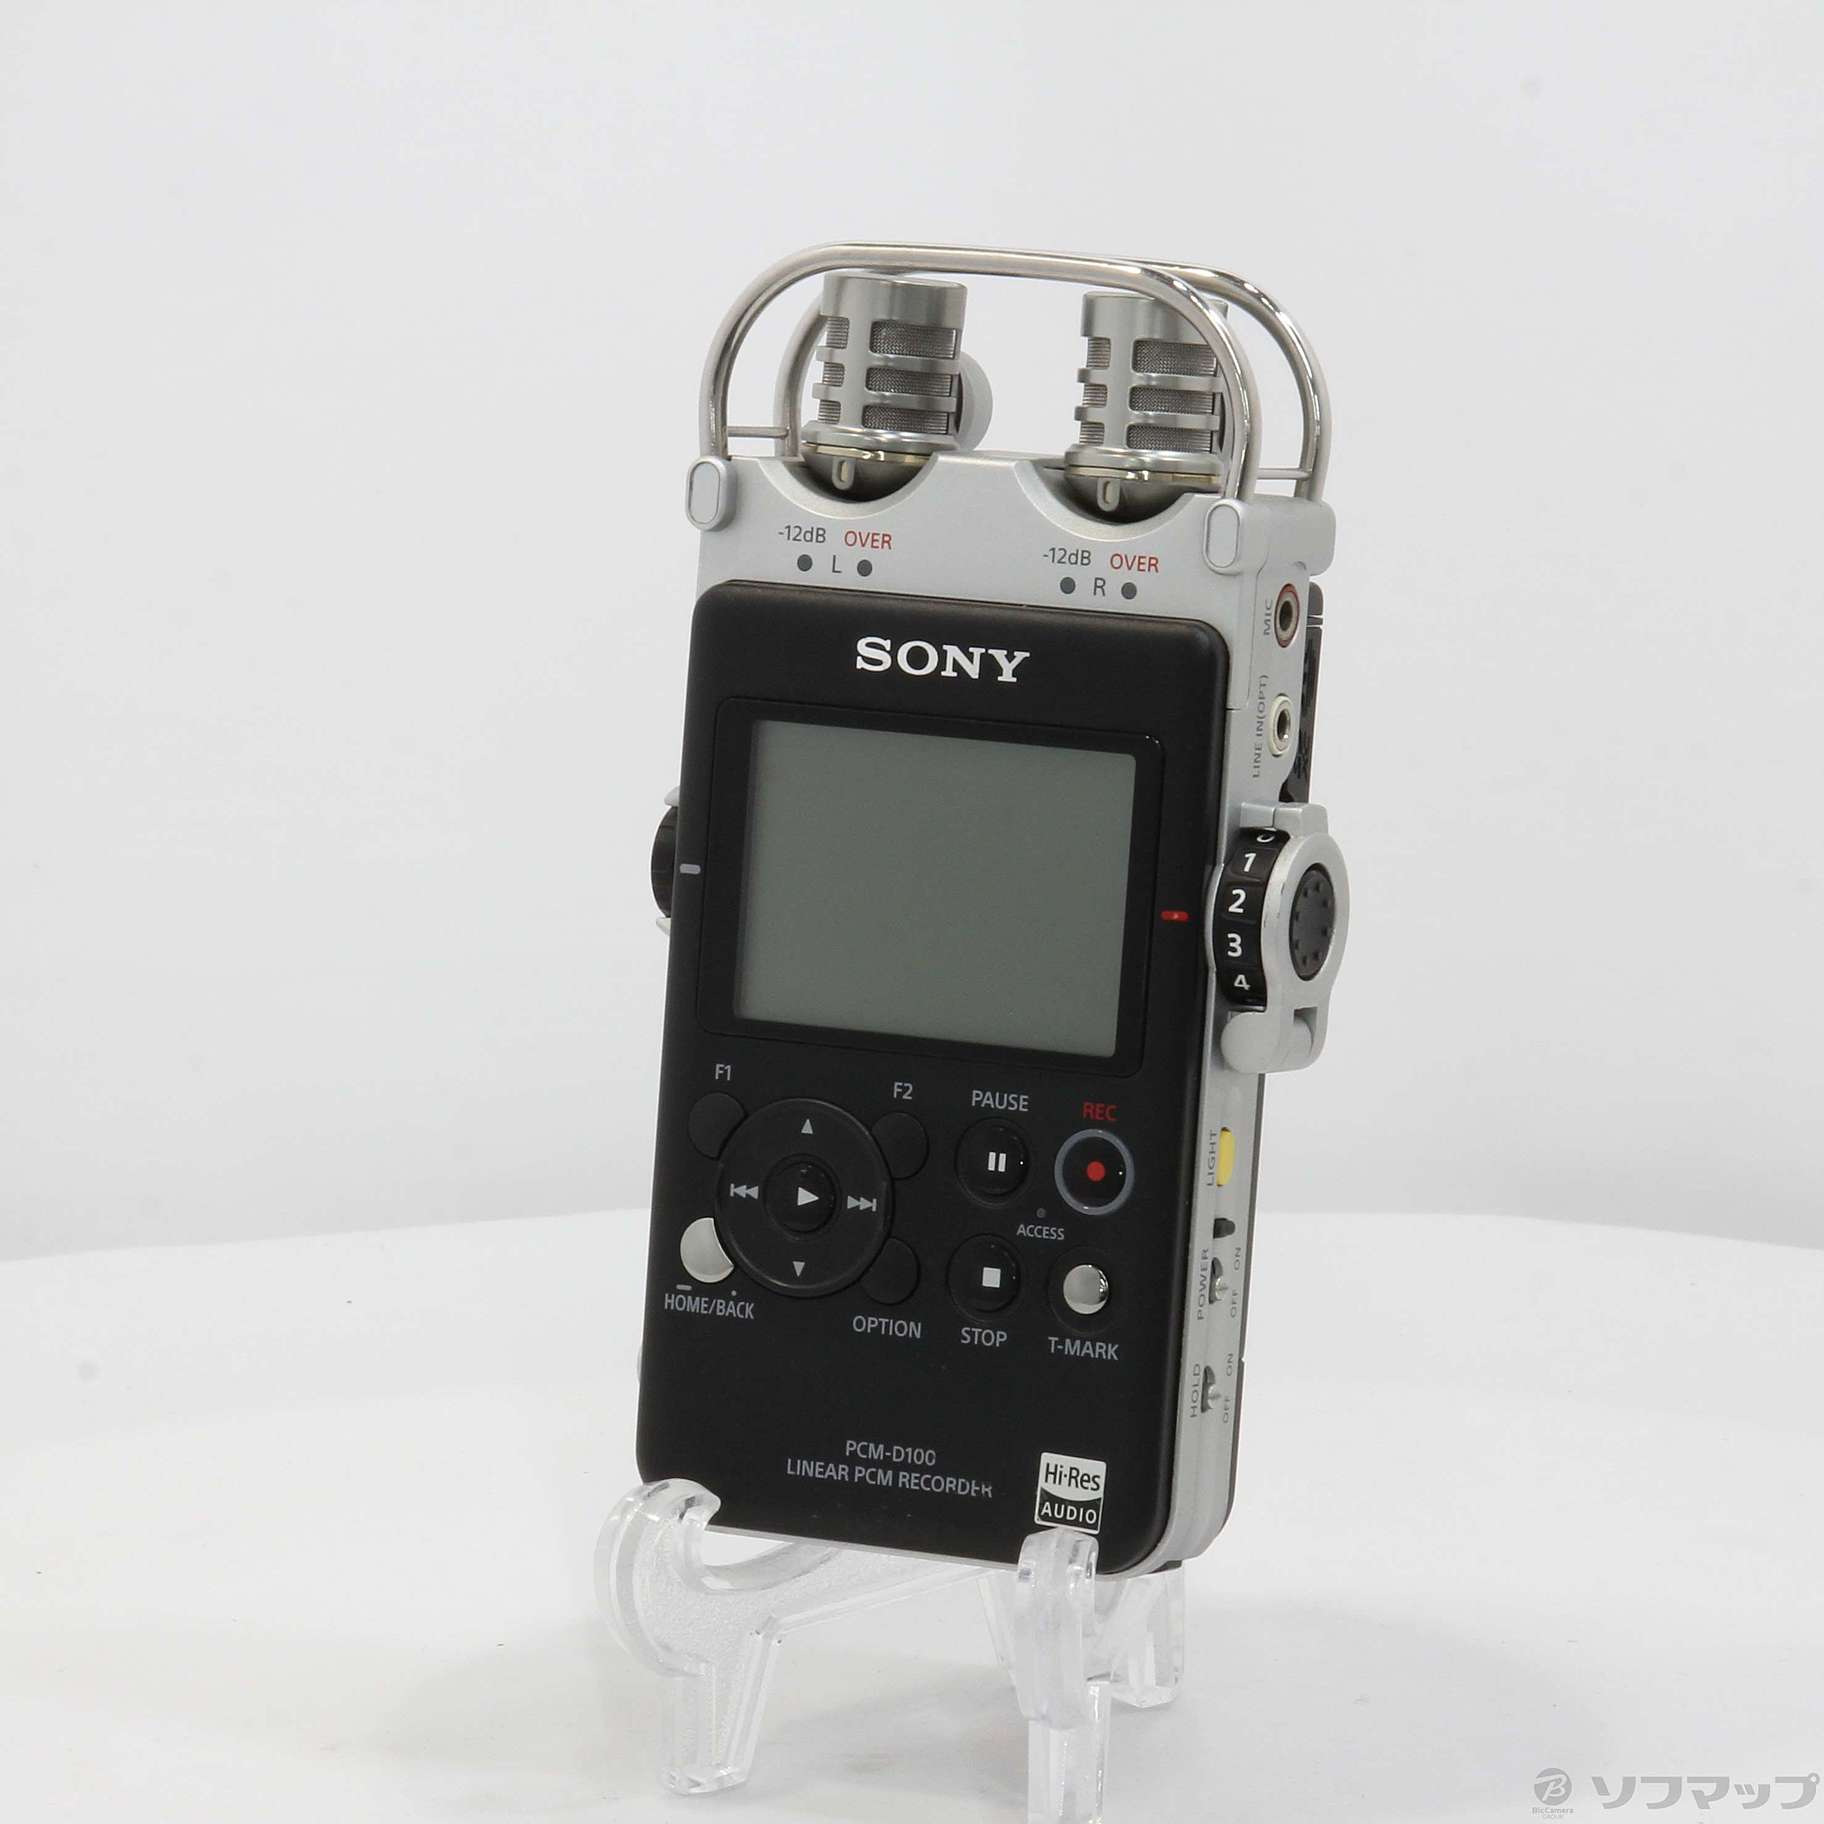 【超美品】SONY PCM-D100 高音質レコーダー